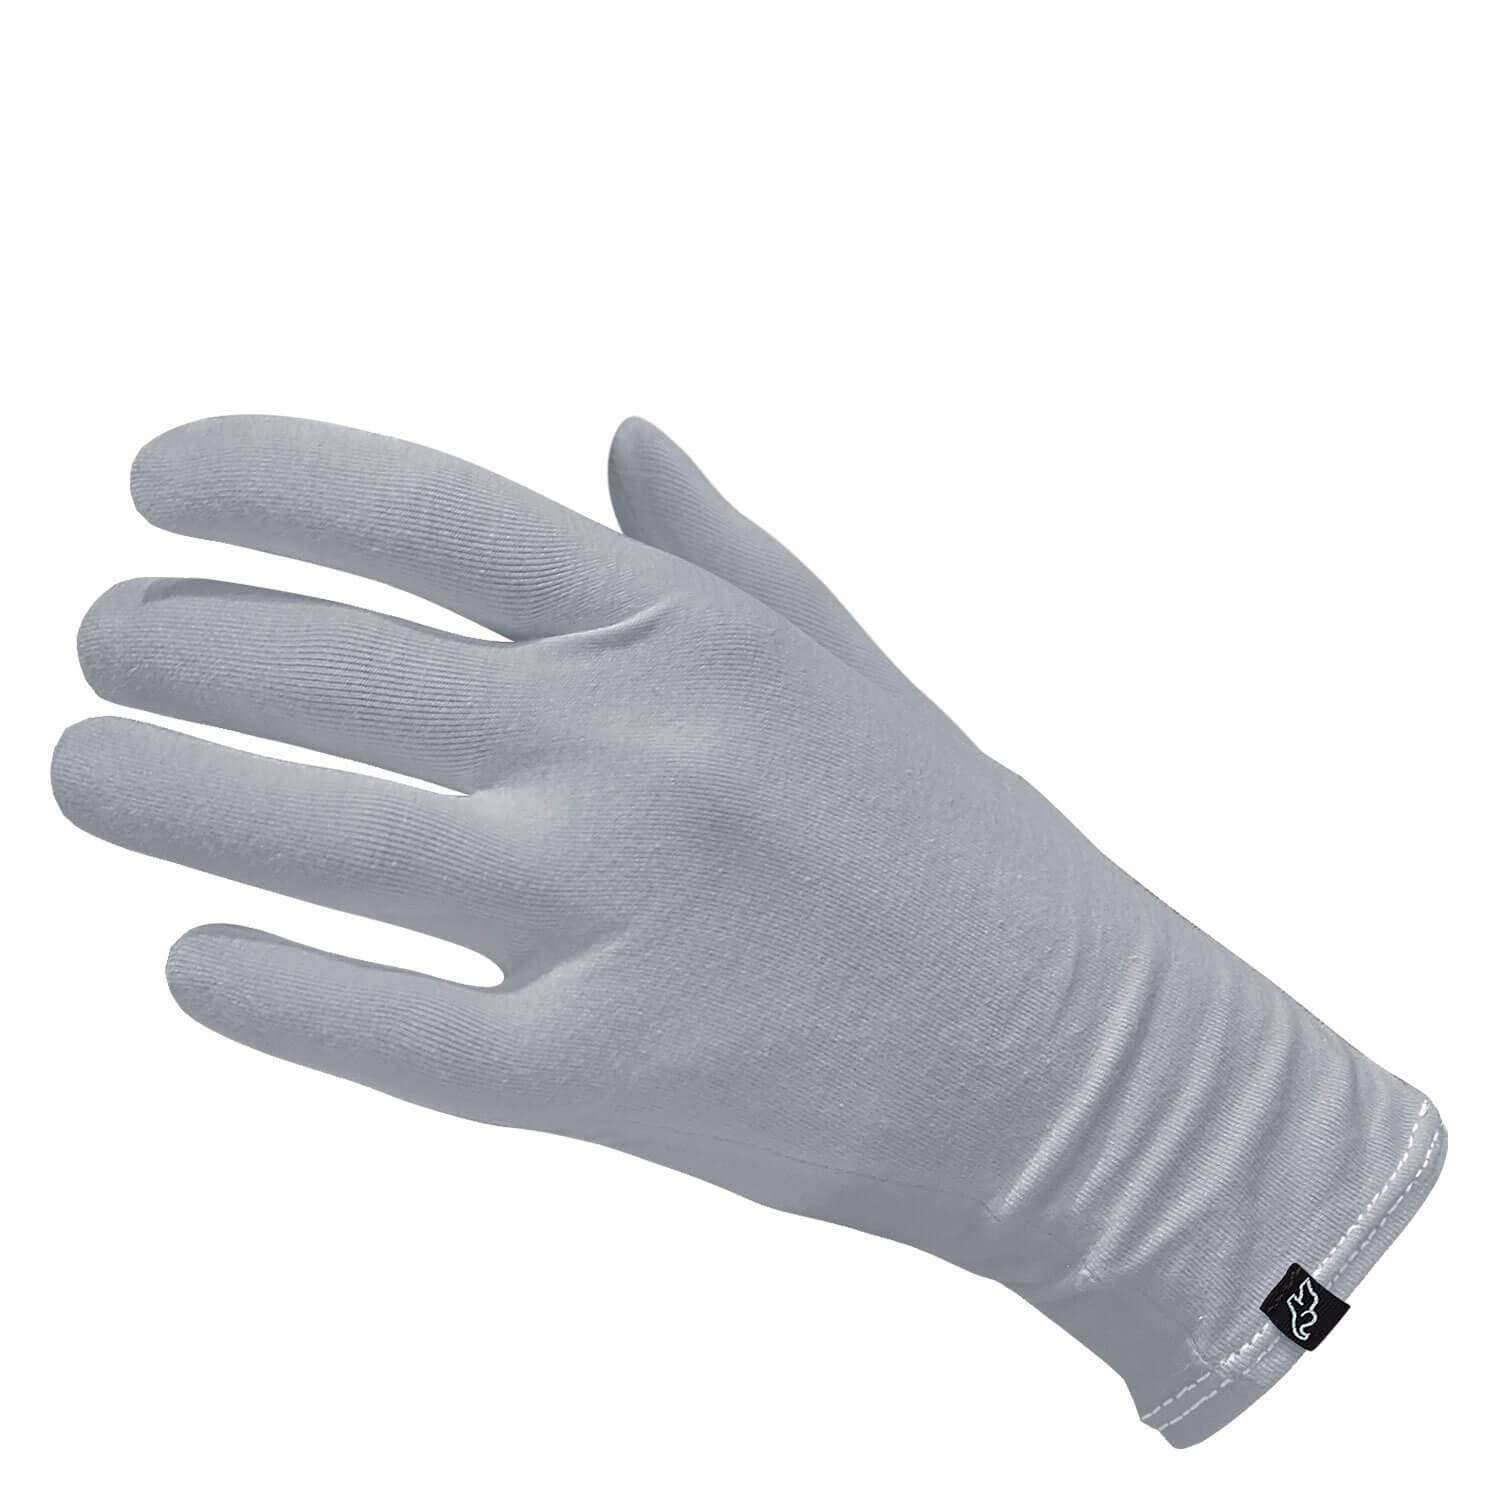 ELEPHANTSKIN - Handschuhe Grau L/XL